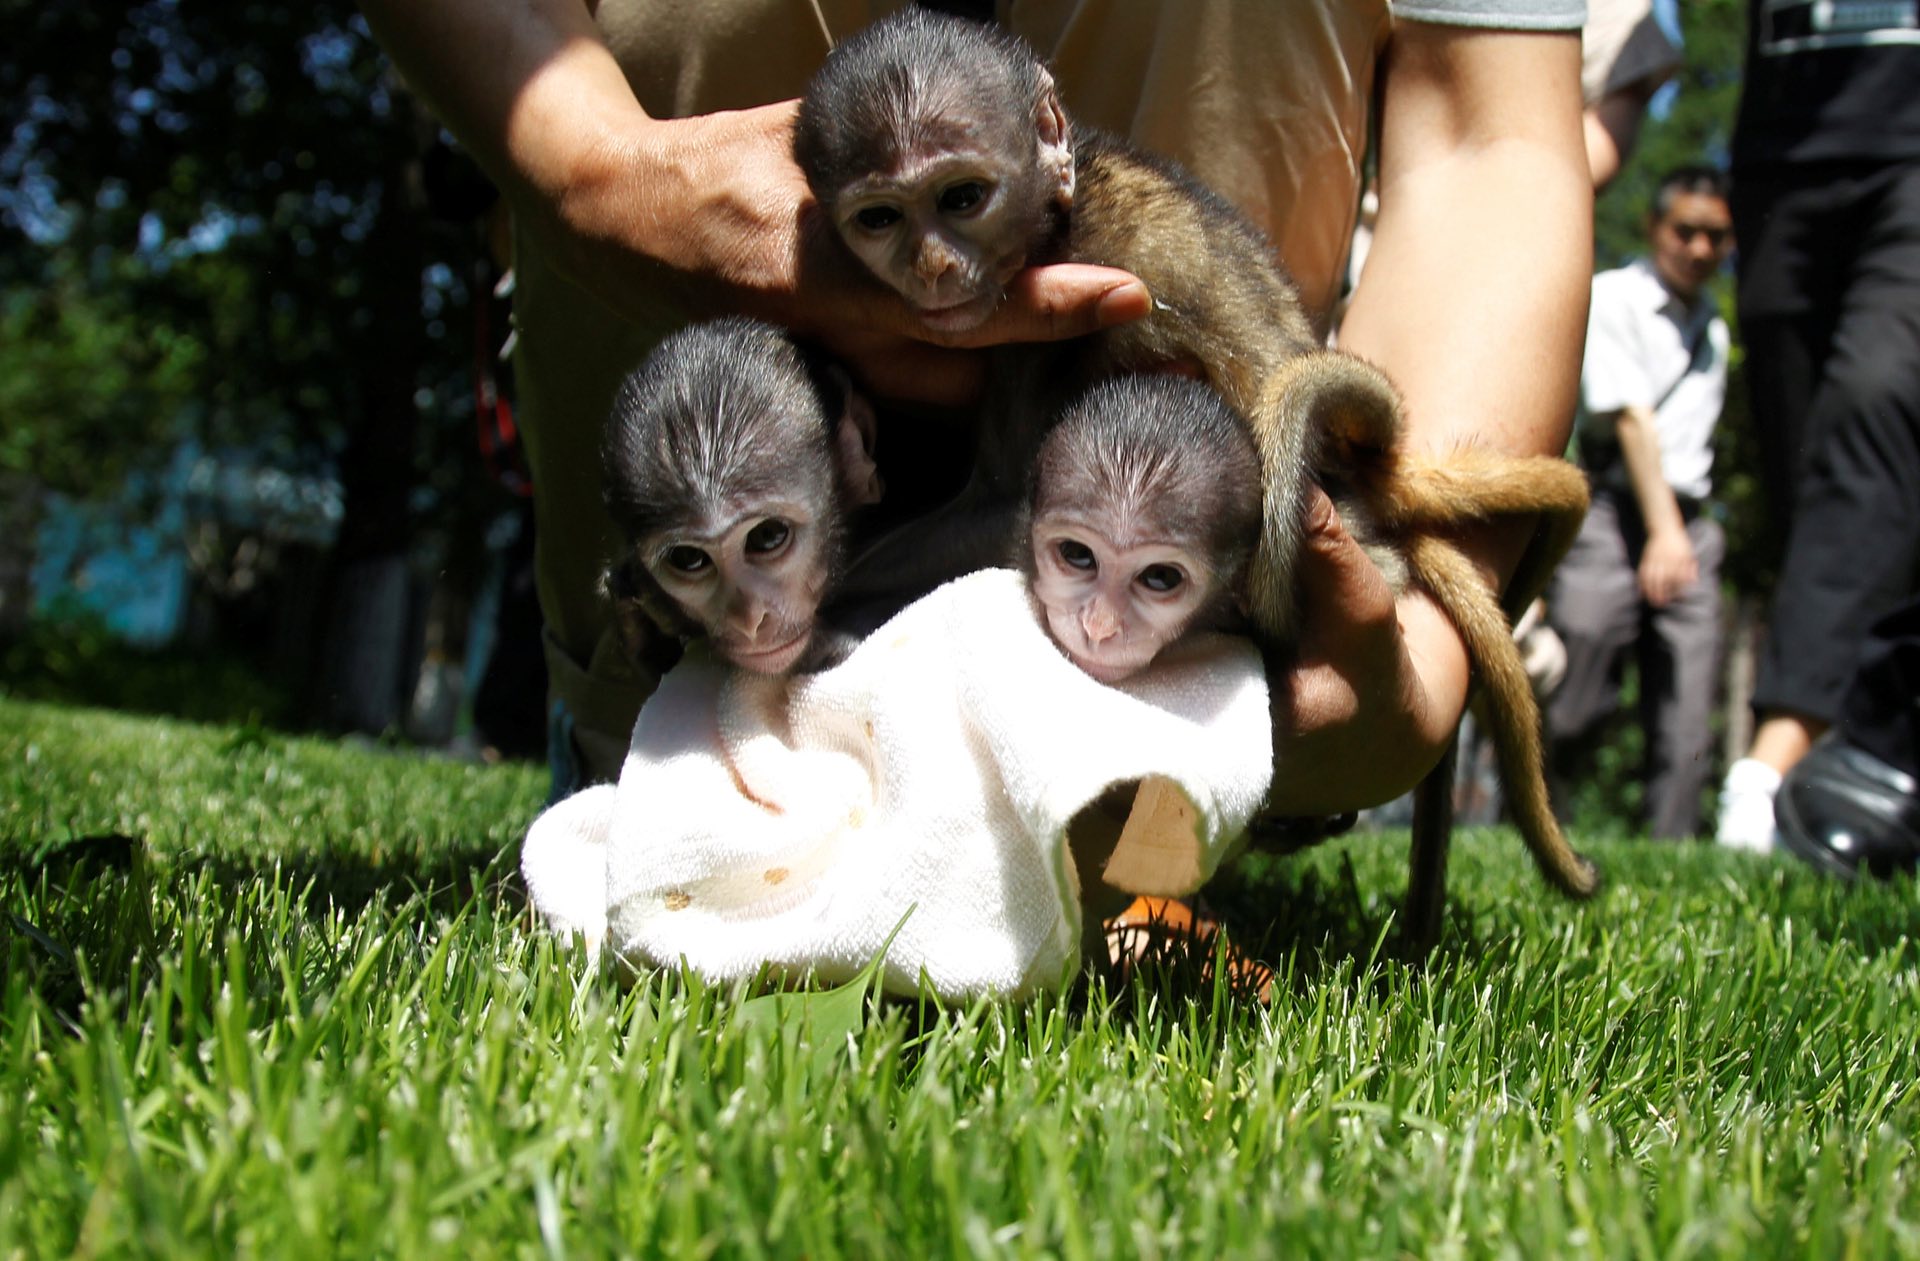 Some newborn Patas monkeys meet the media at a zoo in Zhengzhou, Henan province, Zhengzhou, China. PHOTO: REUTERS